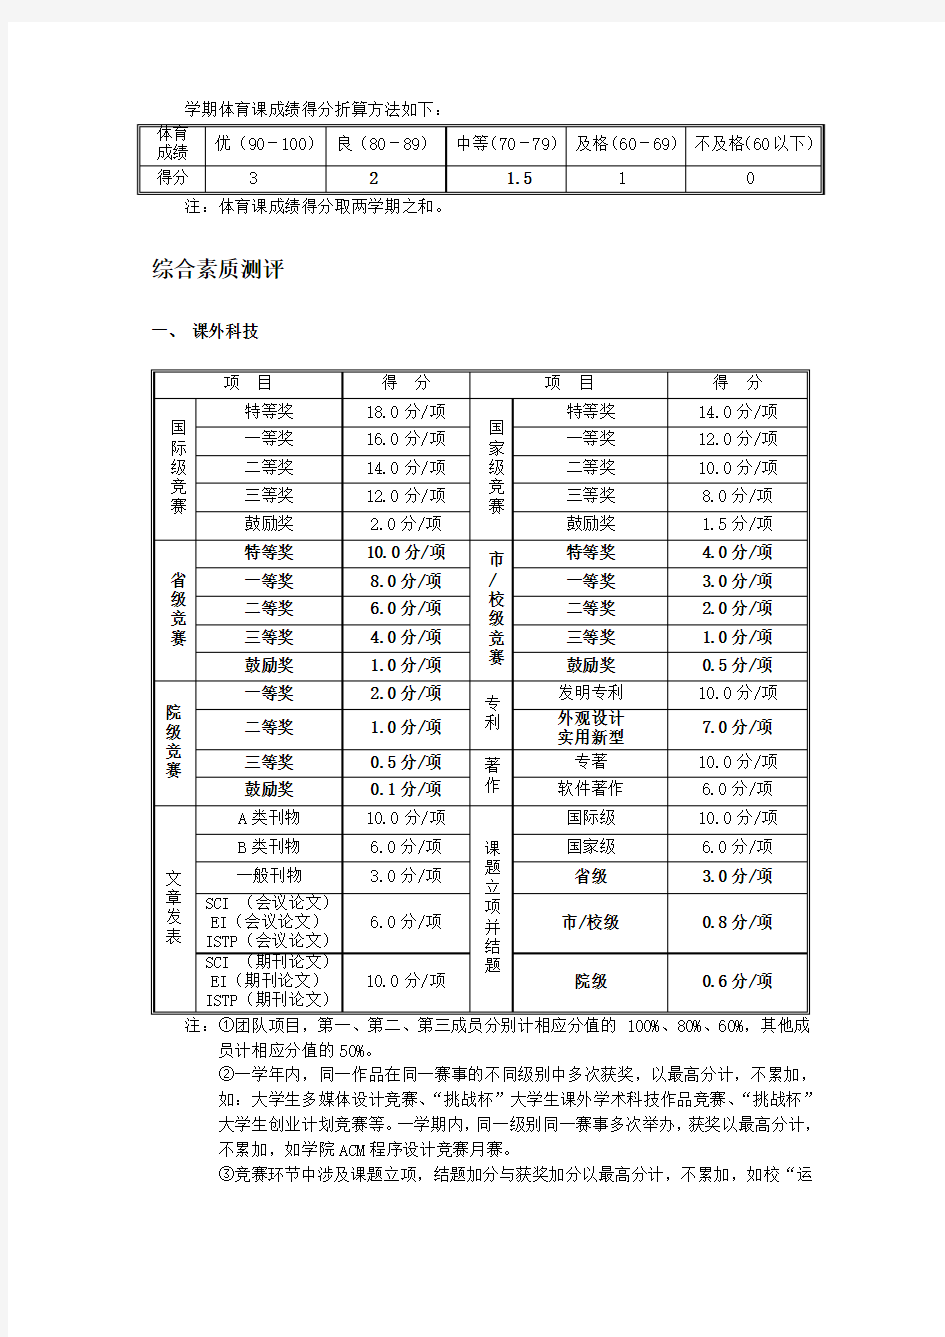 浙江工业大学学生综合测评分细则